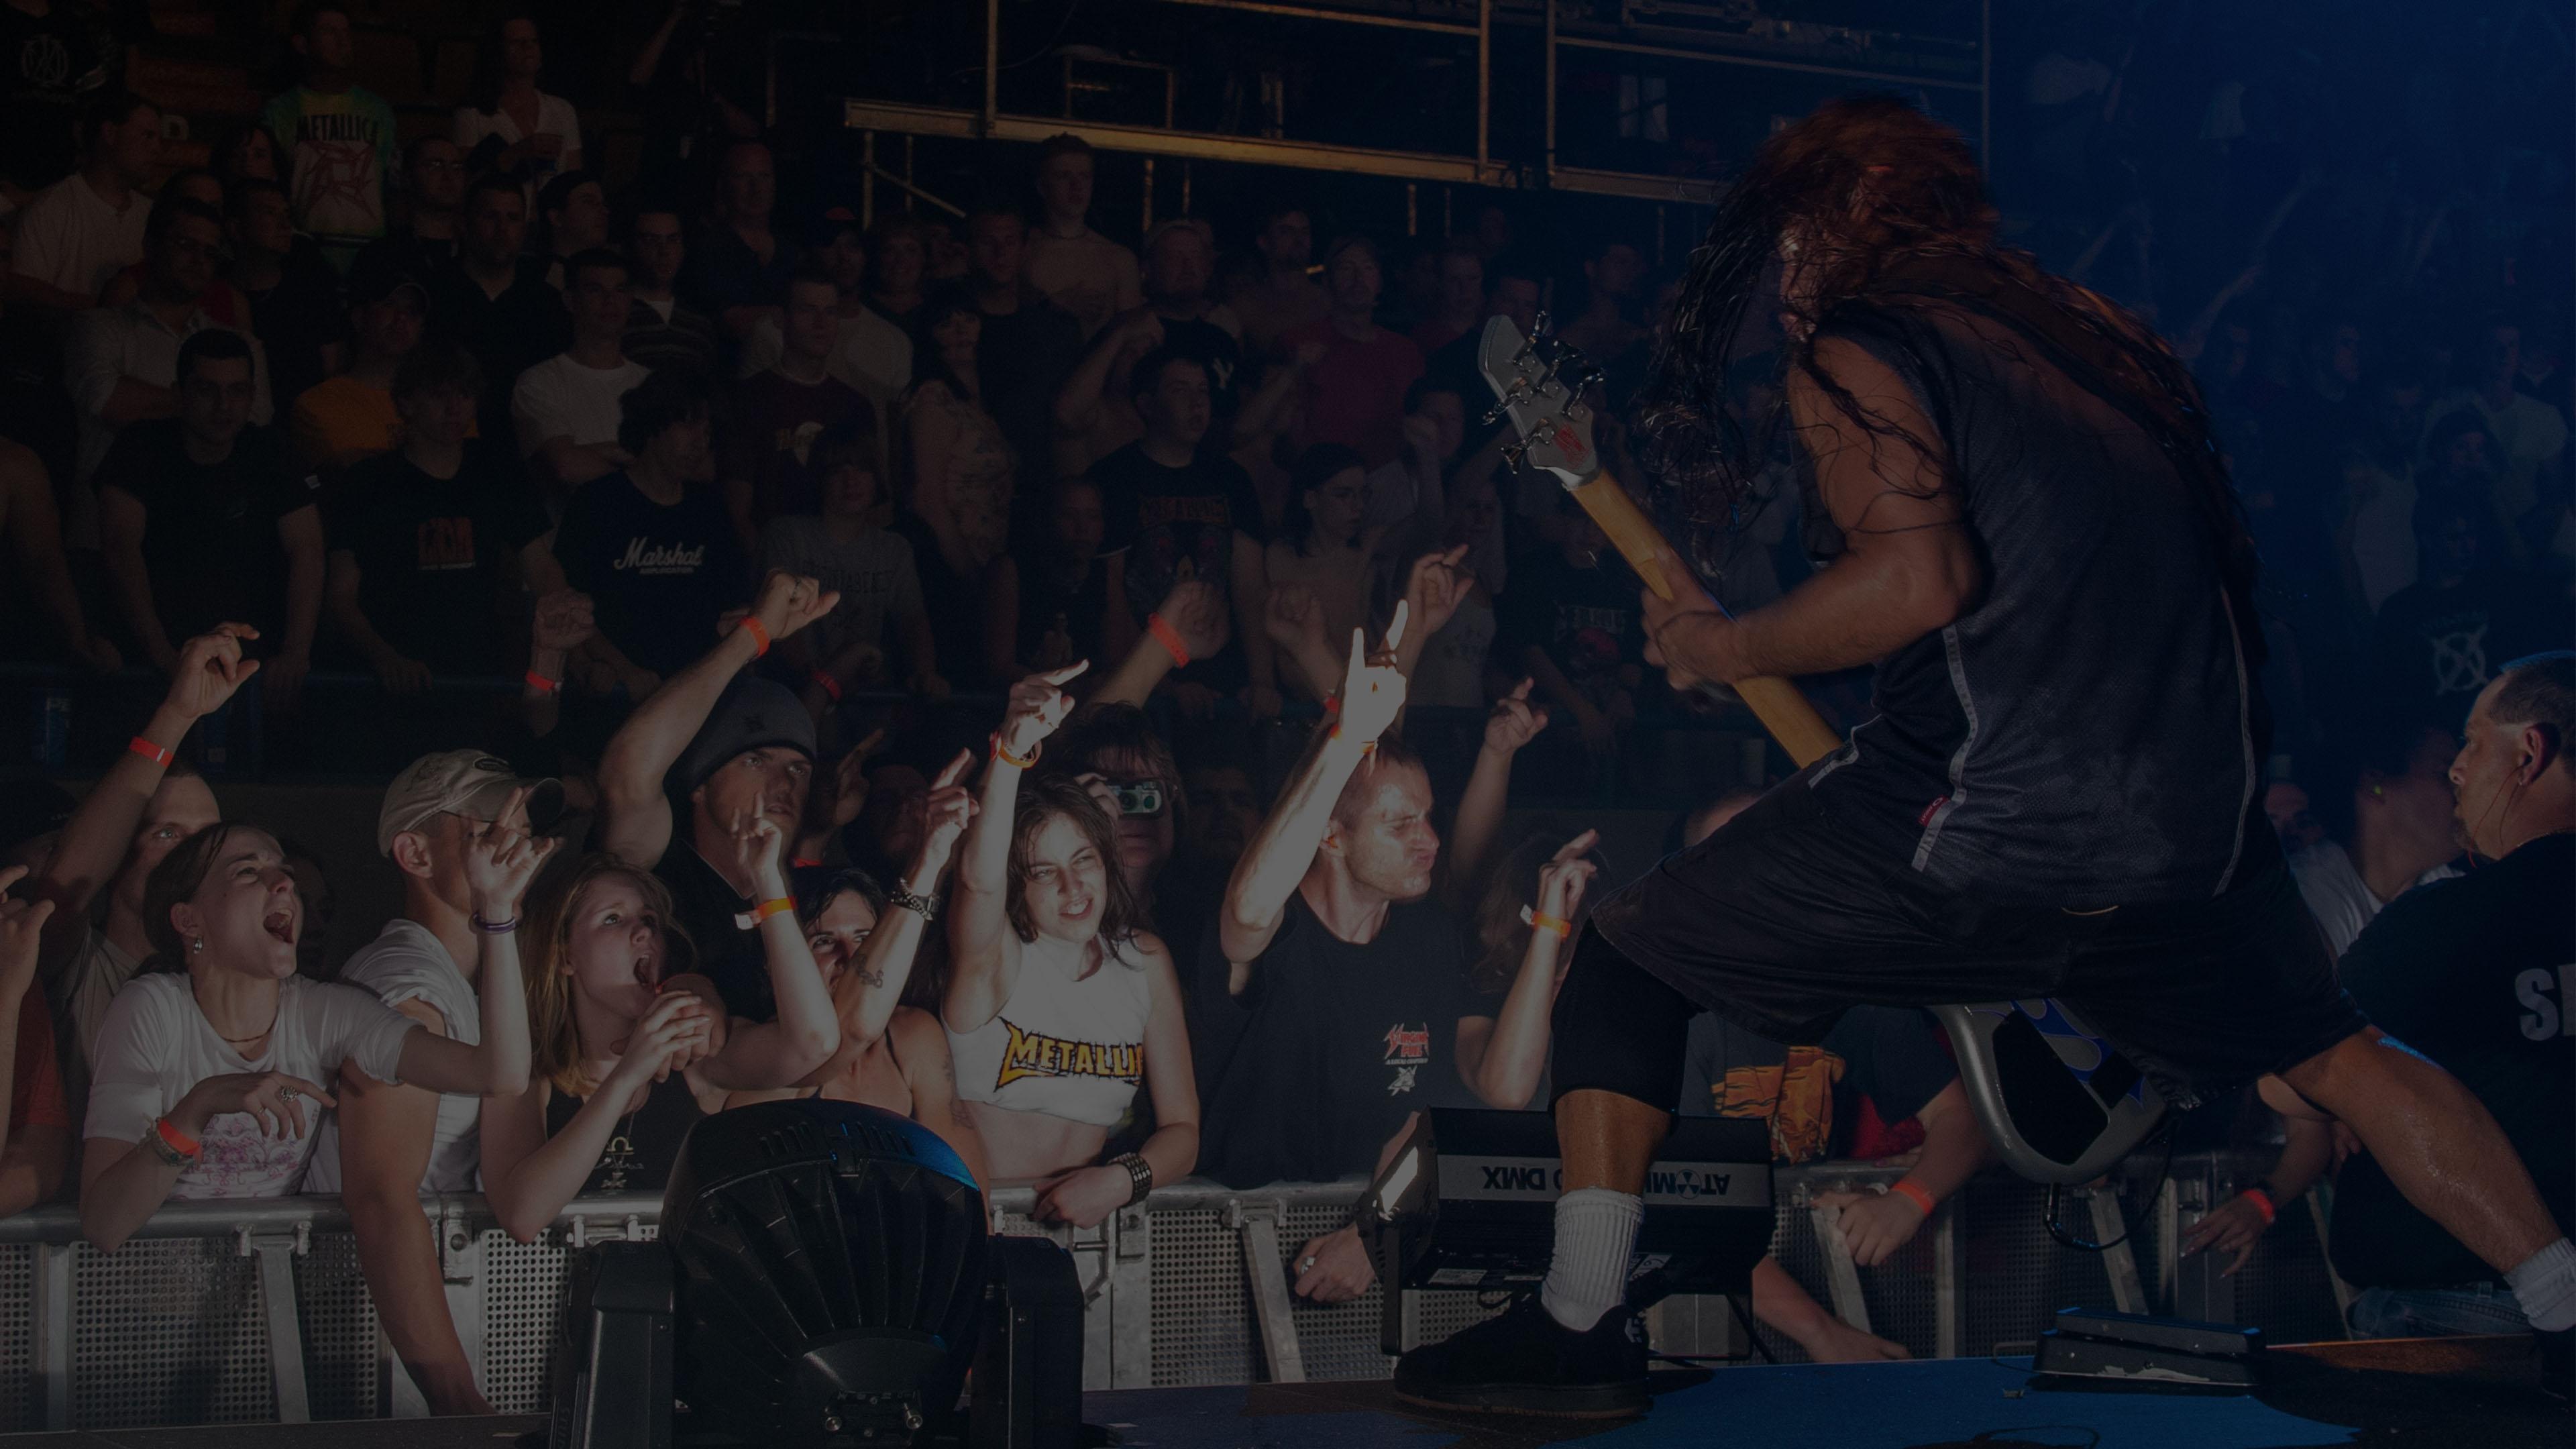 Metallica at Roanoke Civic Center in Roanoke, VA on April 24, 2004